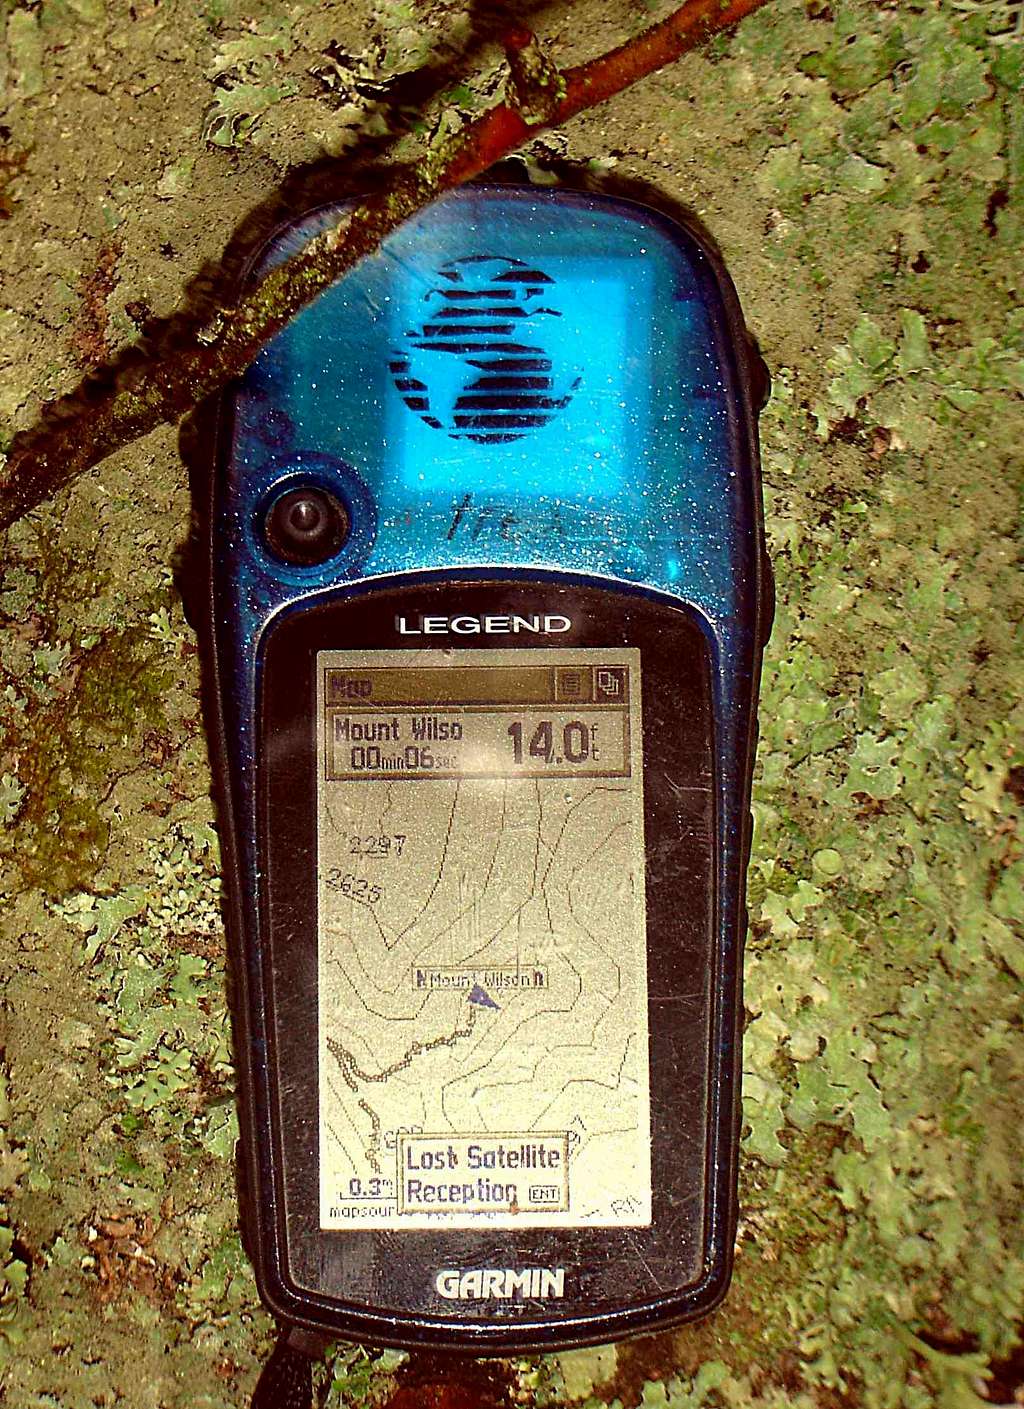 Mount Wilson Summit Topo GPS Capture